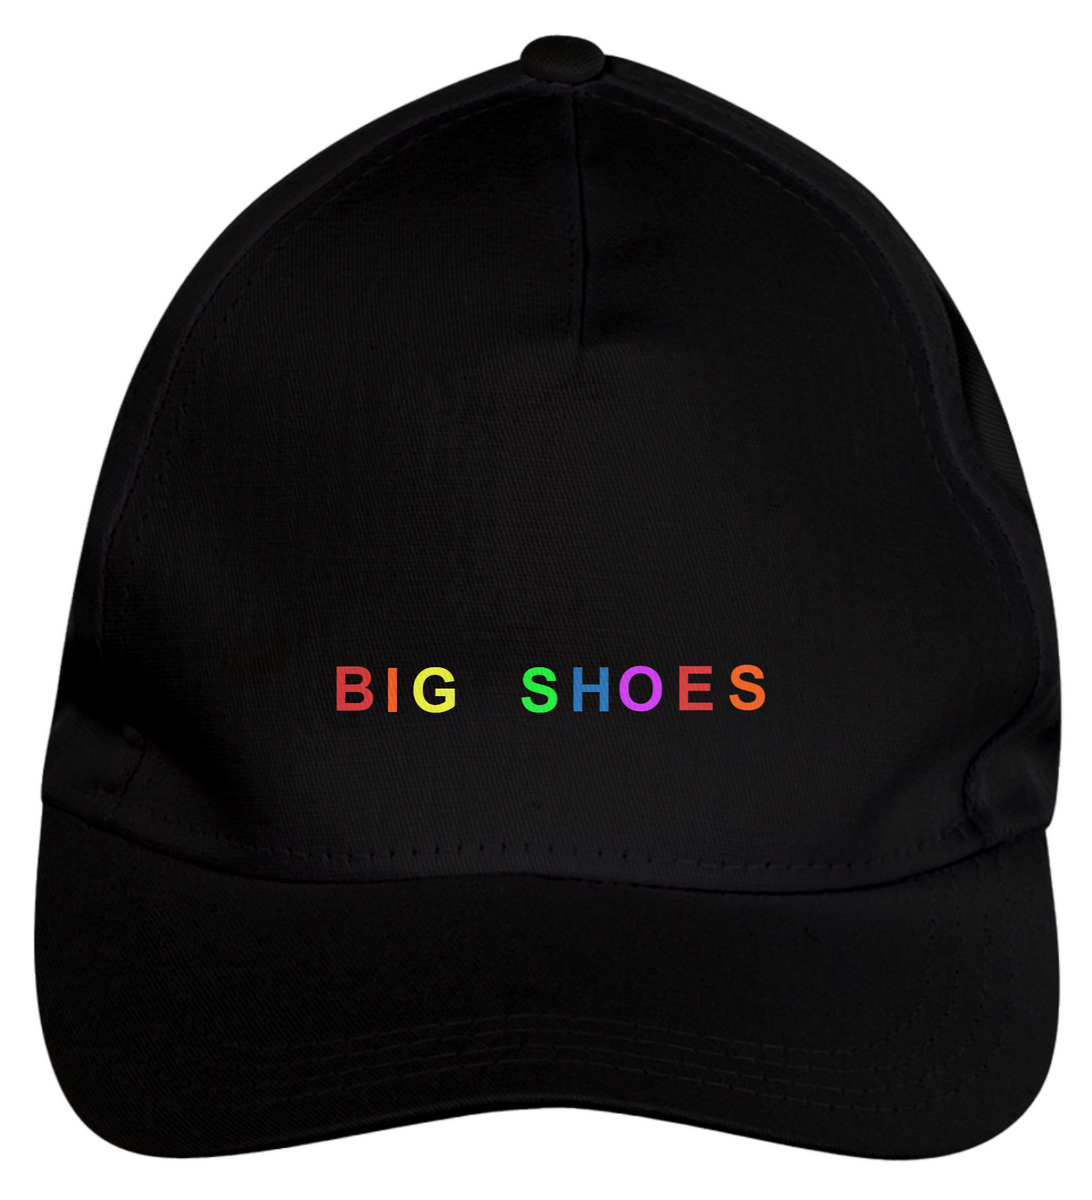 Nome do produto: BONÉ LGBT - Big shoes